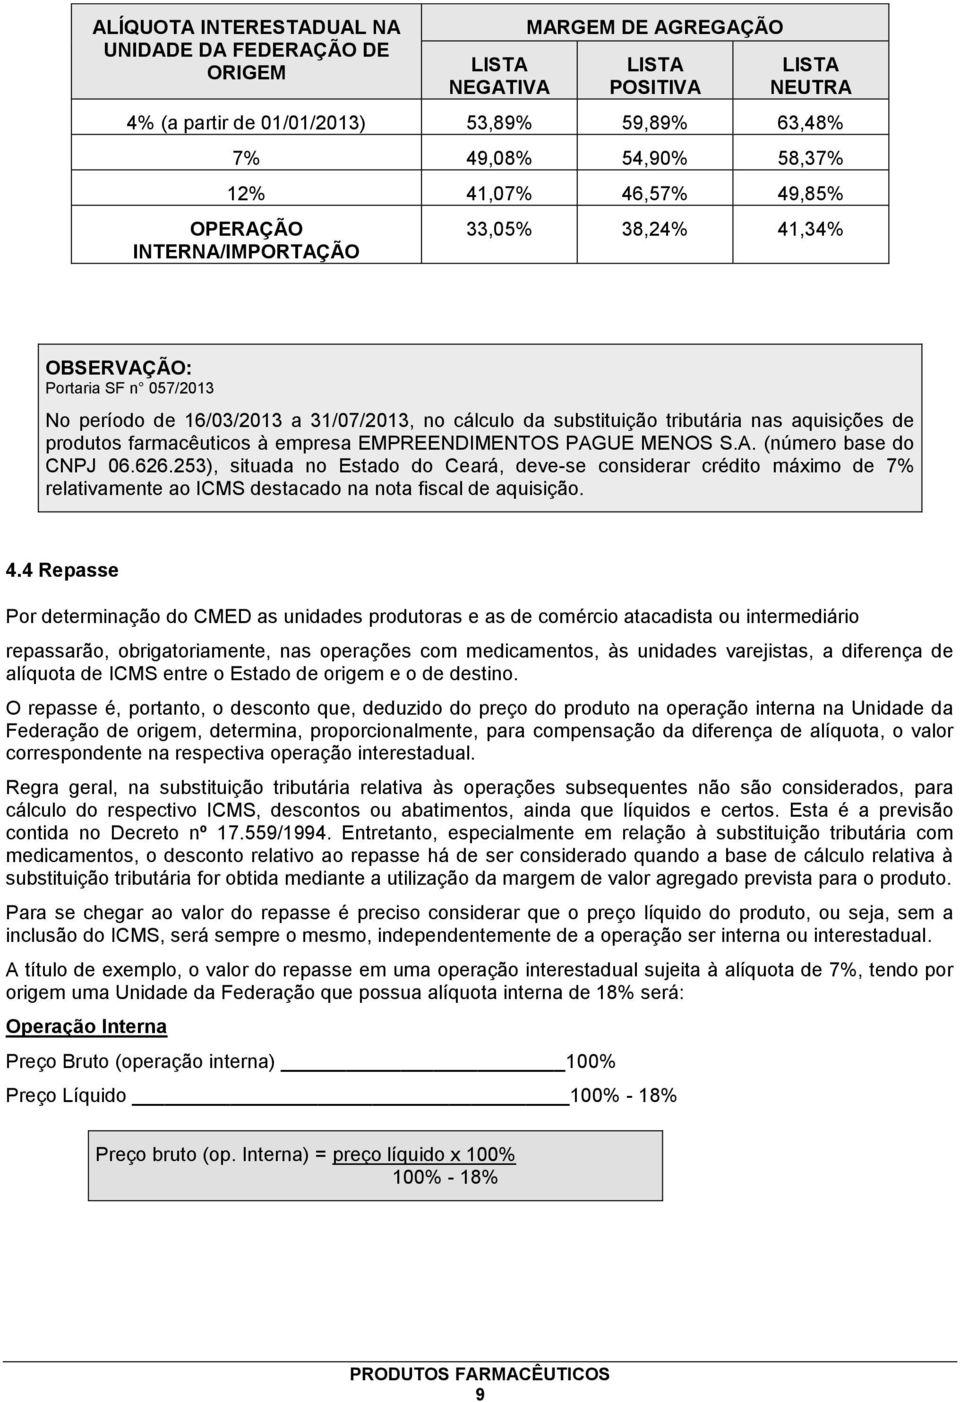 produtos farmacêuticos à empresa EMPREENDIMENTOS PAGUE MENOS S.A. (número base do CNPJ 06.626.